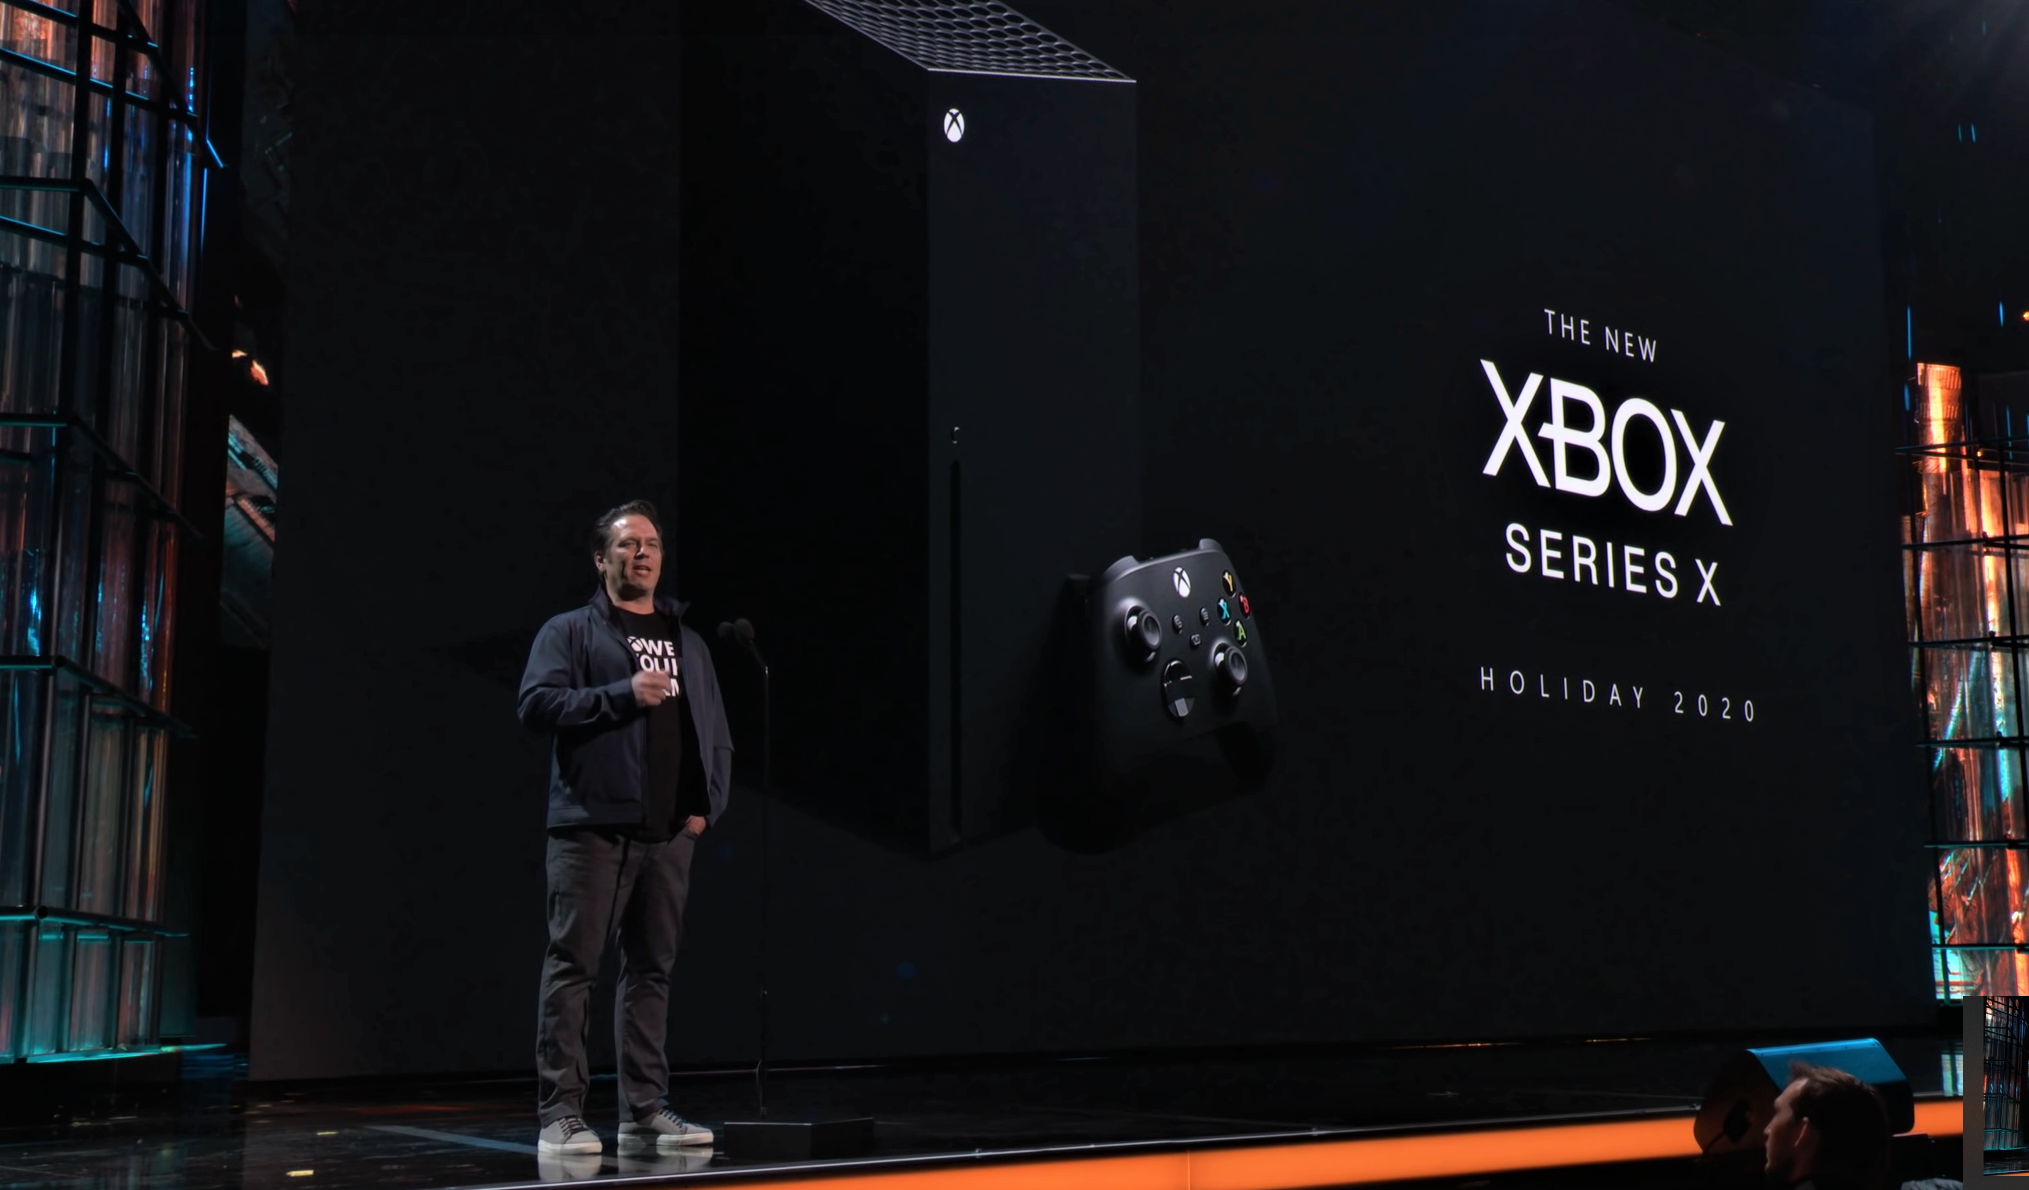 Xbox Series X Specs